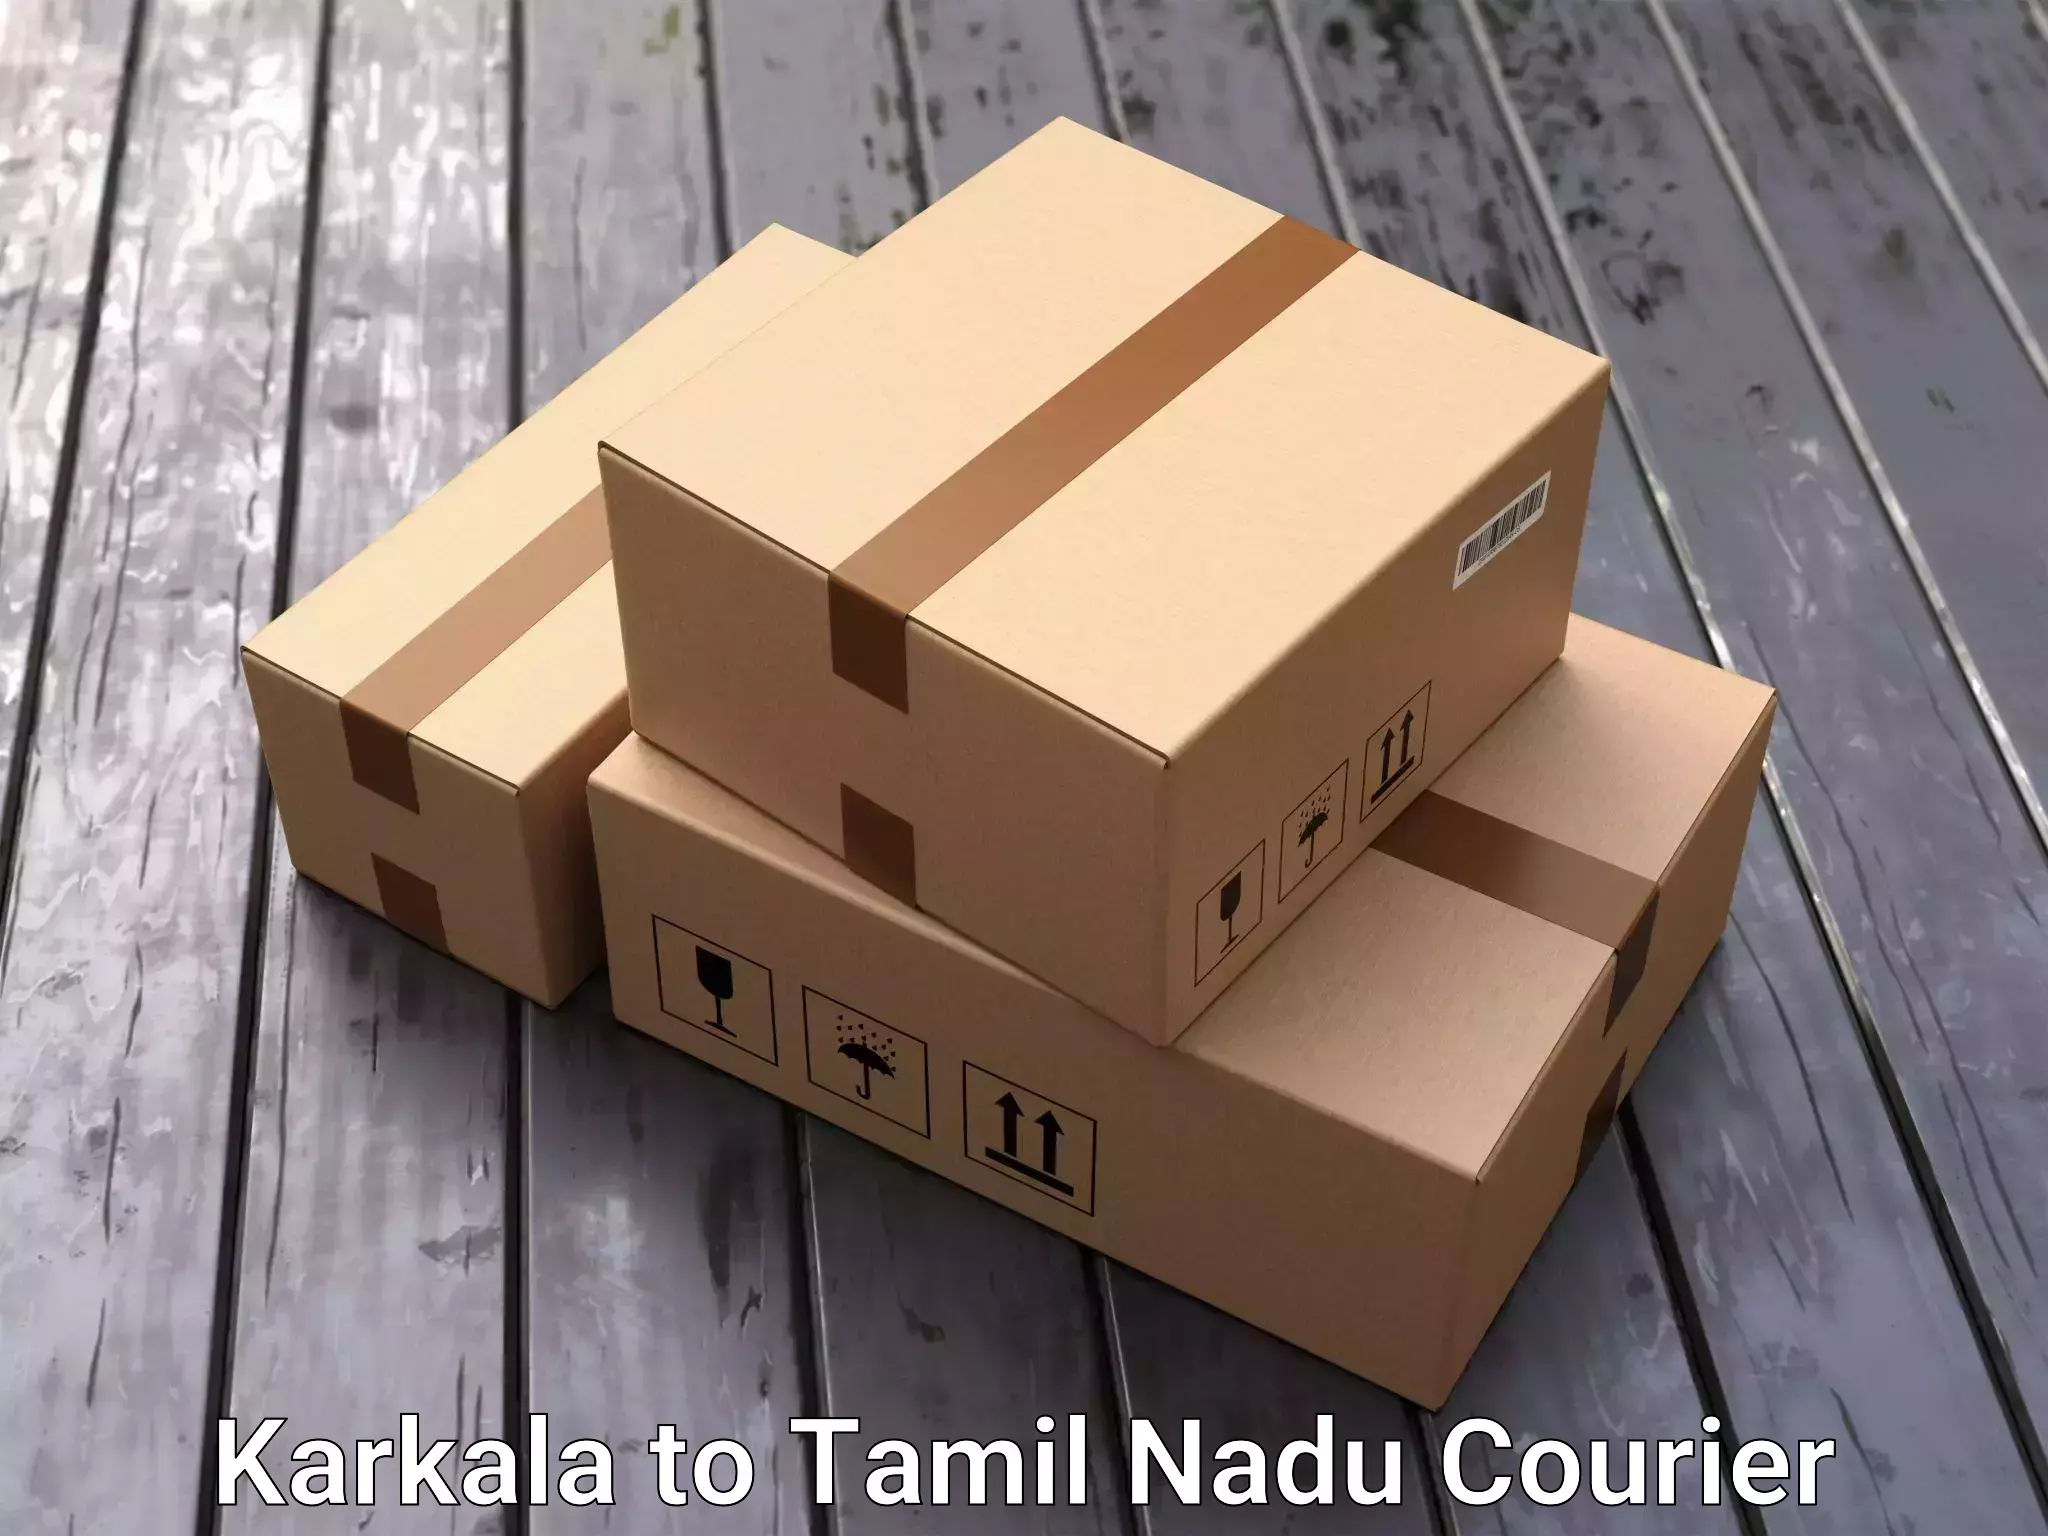 Door-to-door relocation services Karkala to Tamil Nadu